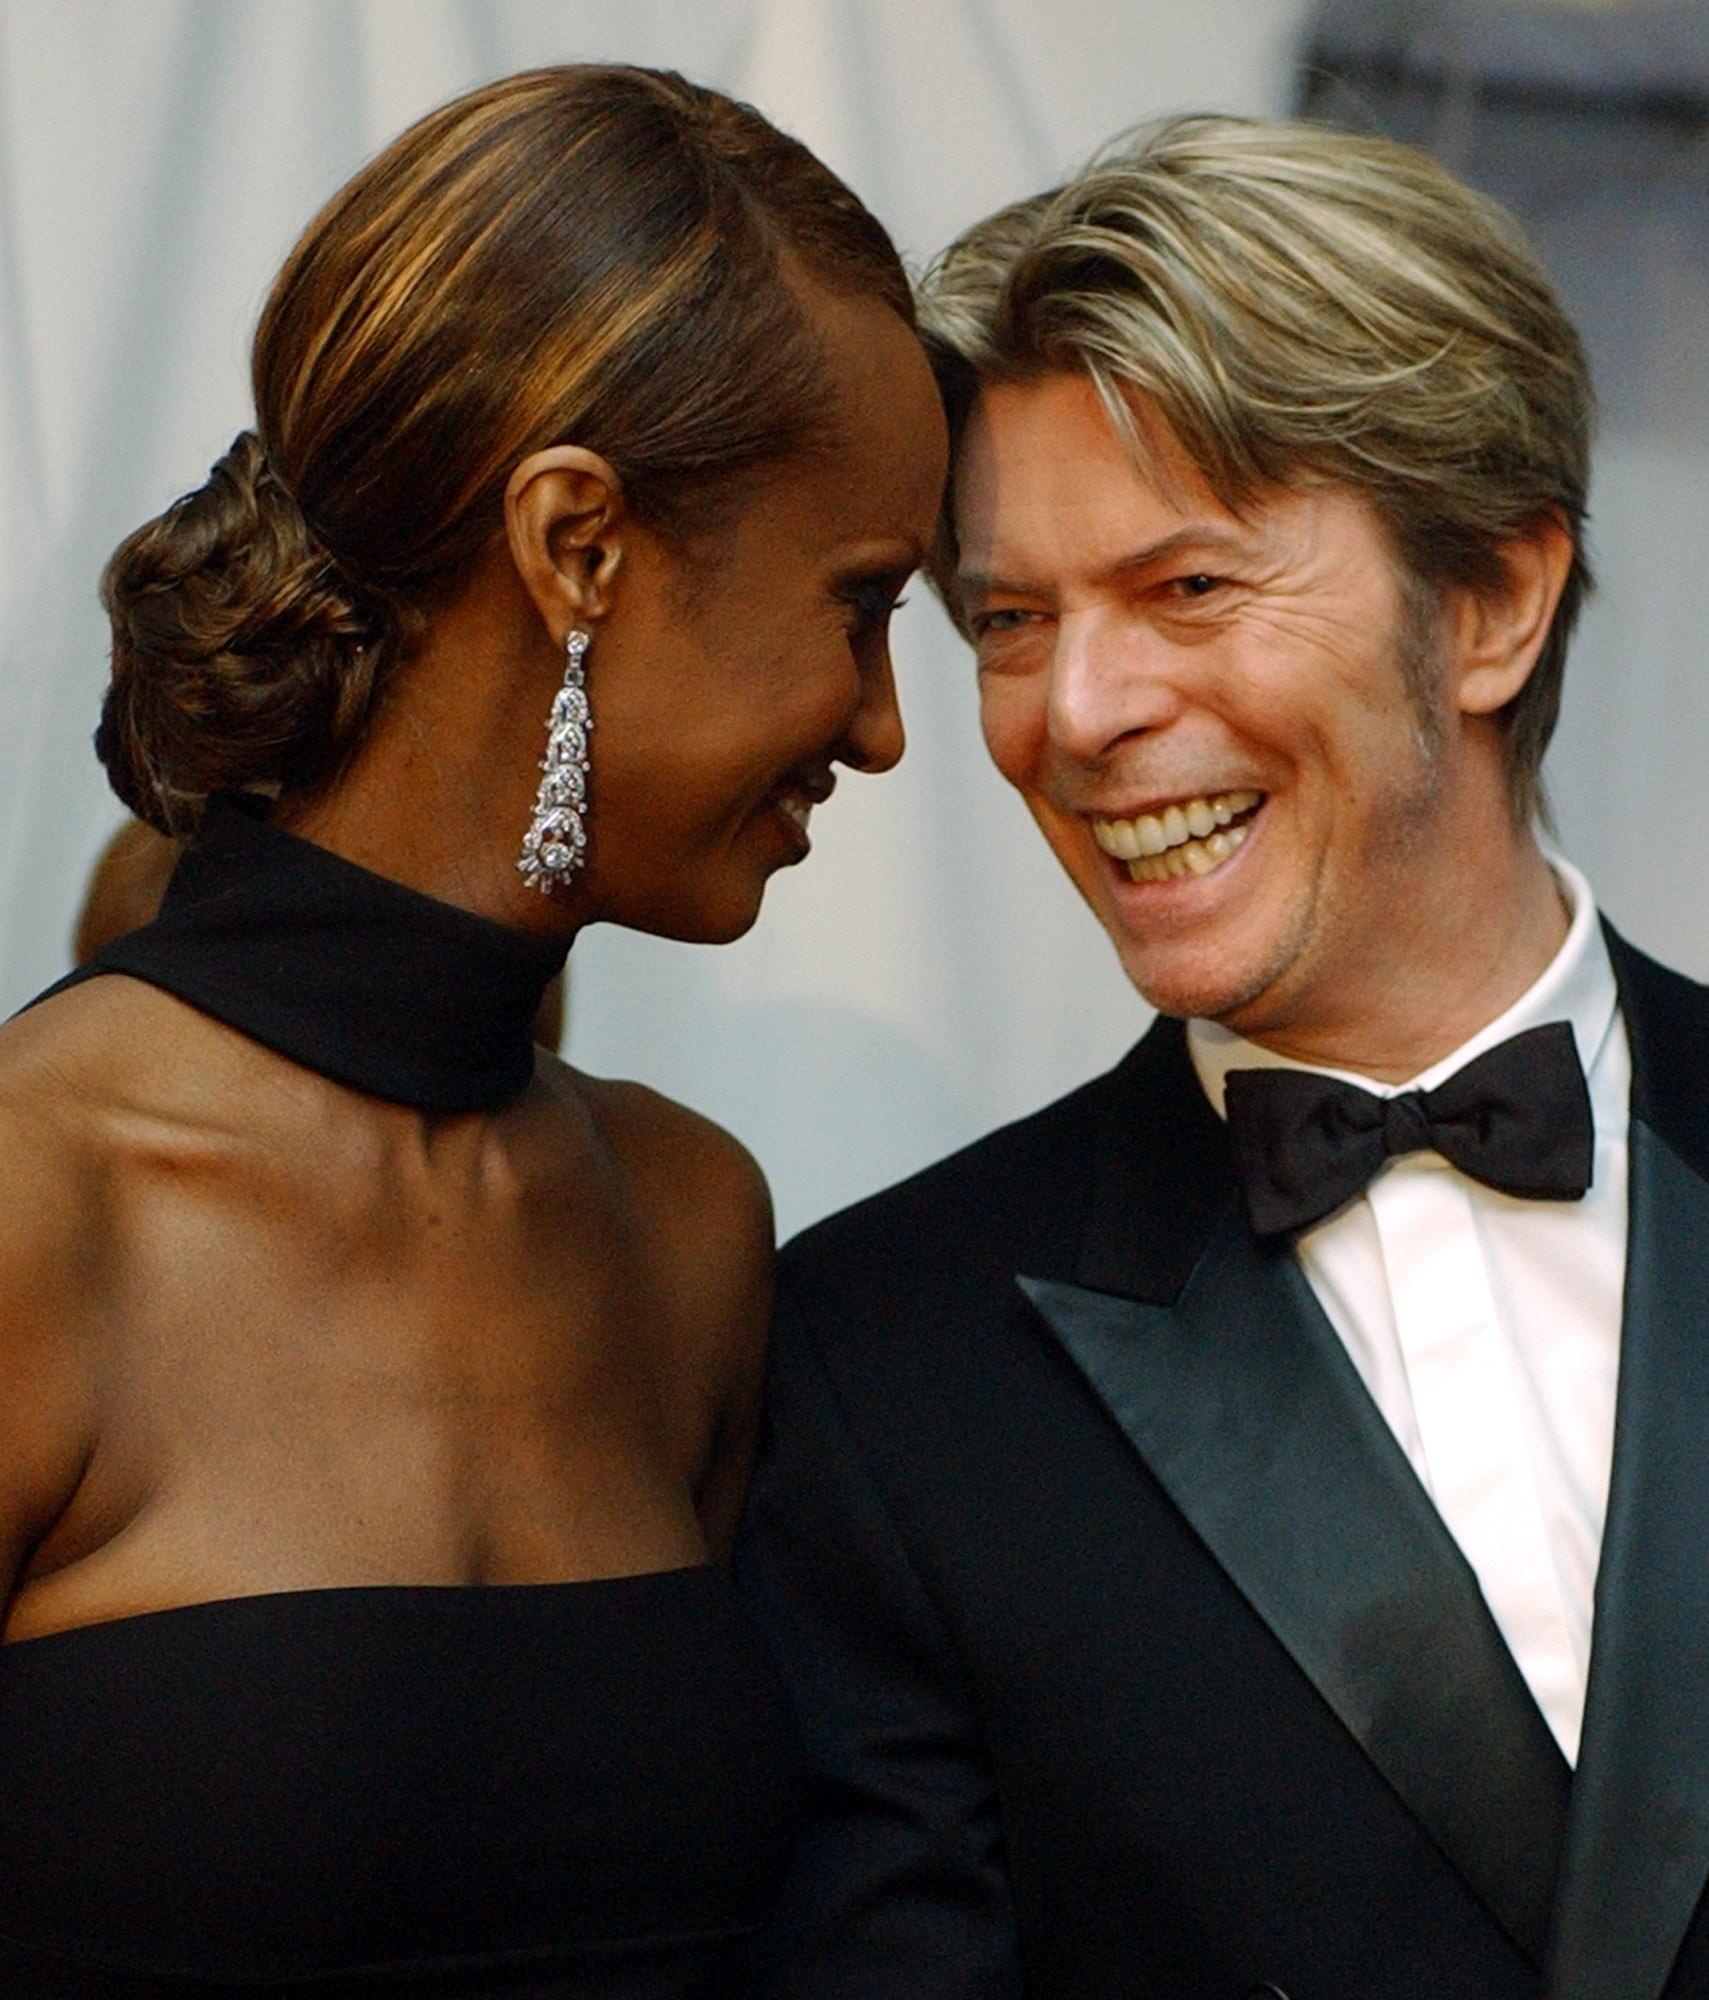 David Bowie gifte sig med modellen Iman under en privat ceremoni i April 1992 i Lausanne. Här en bild från 2002